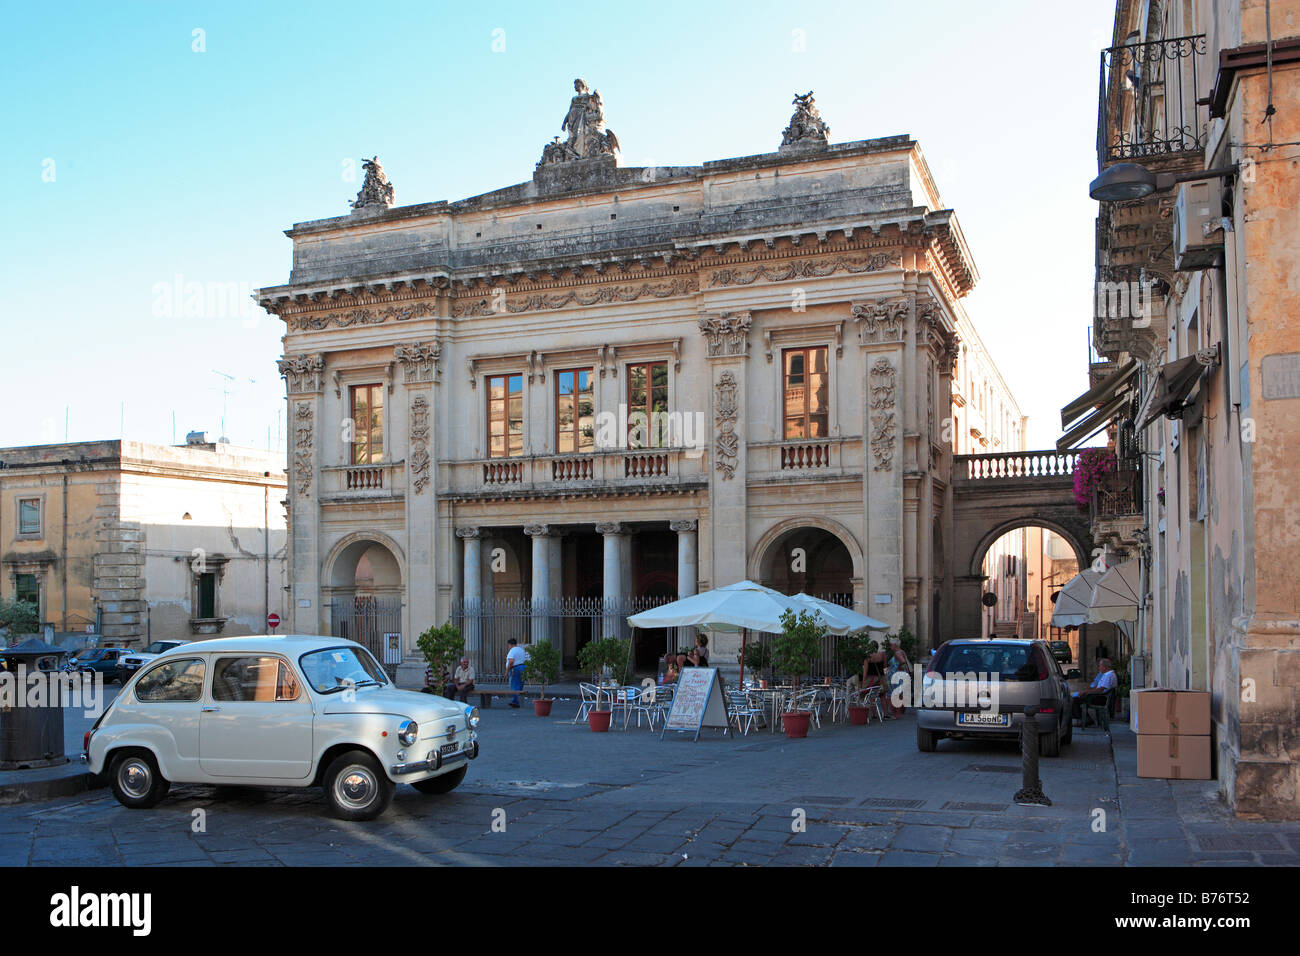 Teatro Comunale, Town Theatre, Piazza XVI Maggio, Noto, Sicily Stock Photo